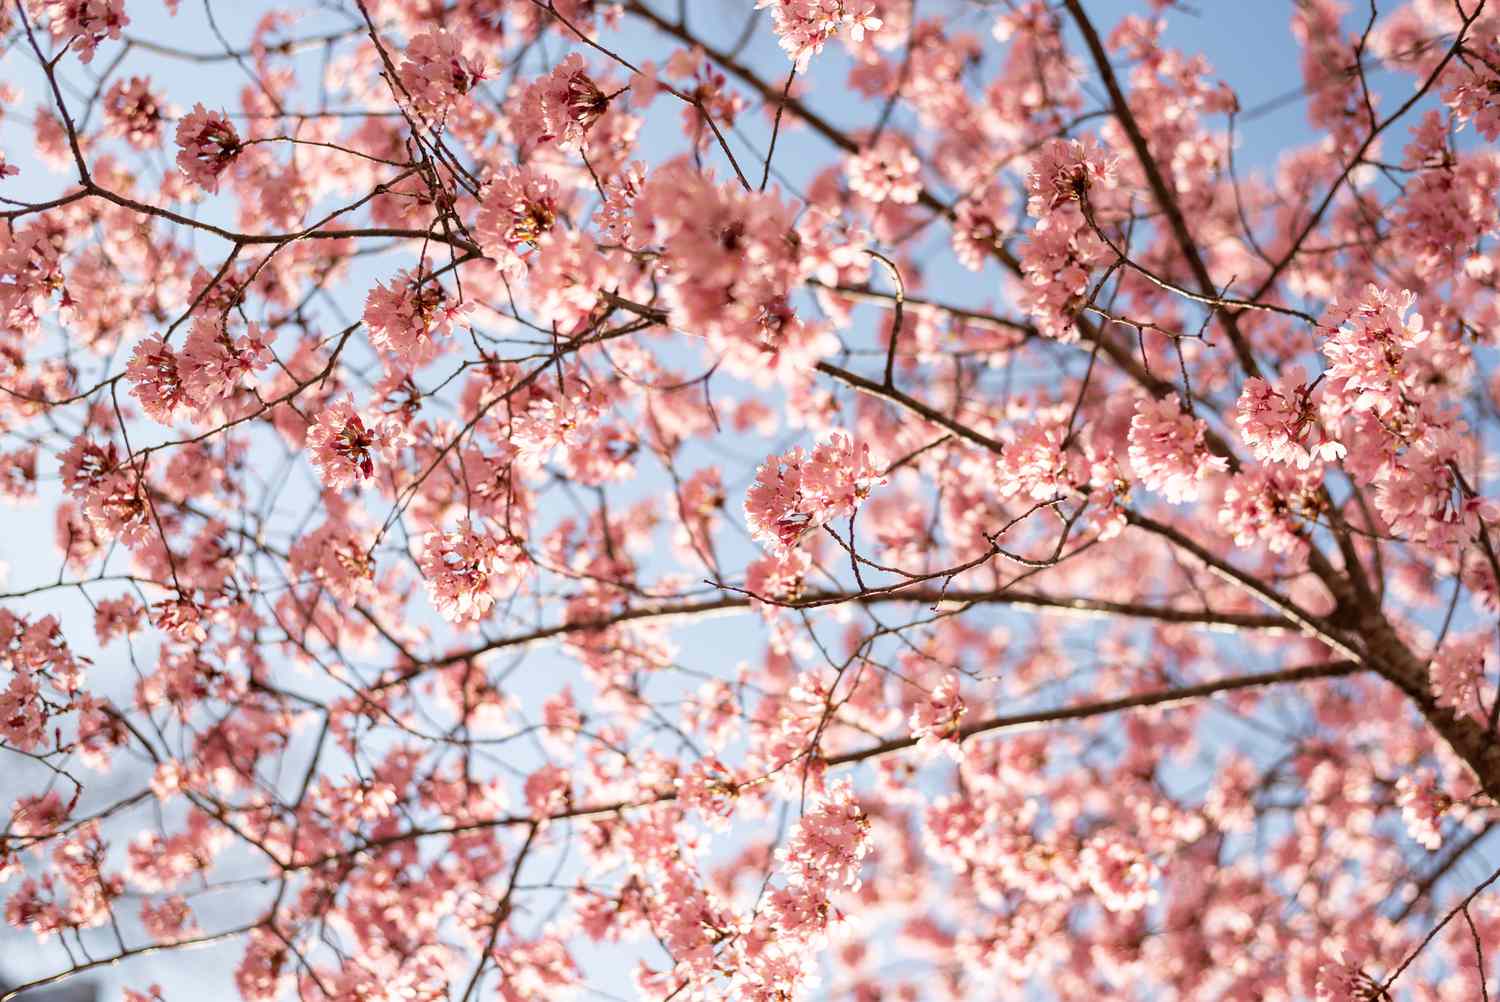 Süßkirschbaumzweige mit kleinen rosa Blütentrauben vor blauem Himmel